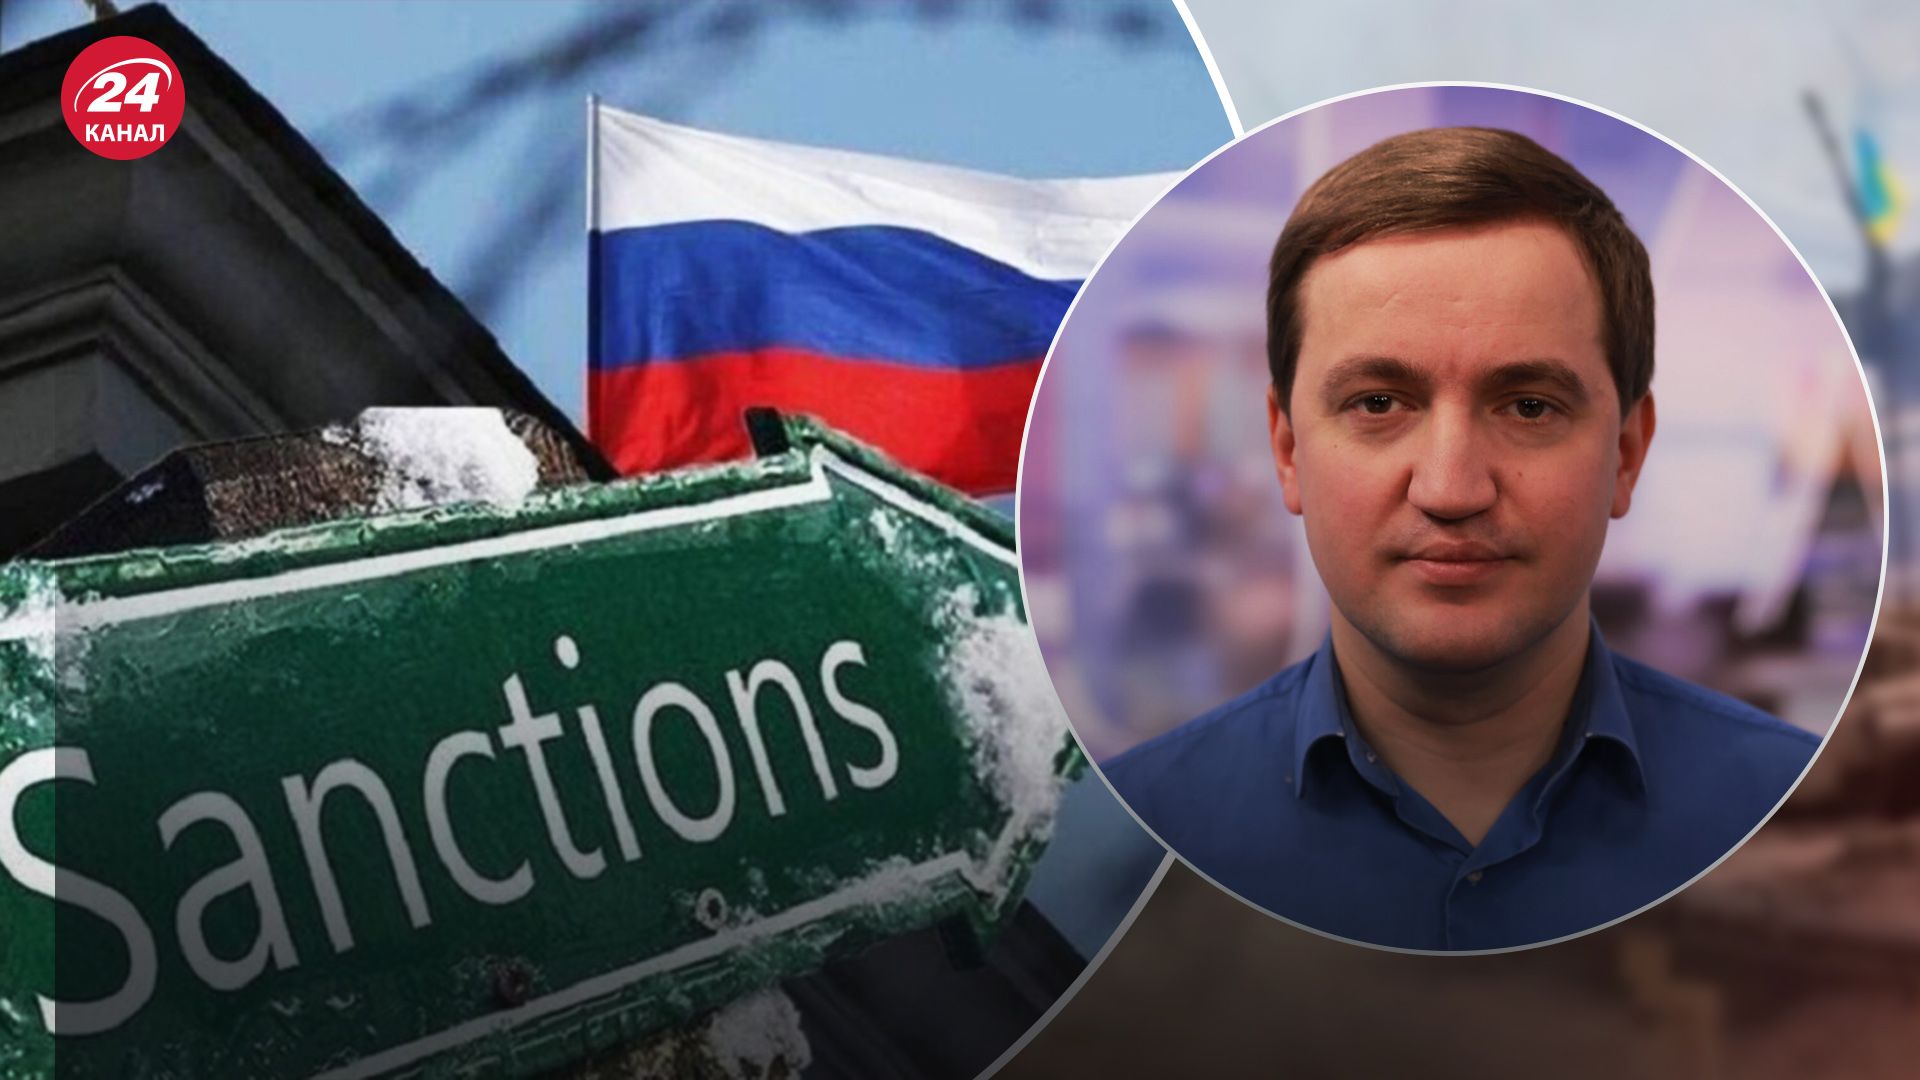 Санкции против России - Солонтай рассказал о дефиците ресурсов - 24 Канал